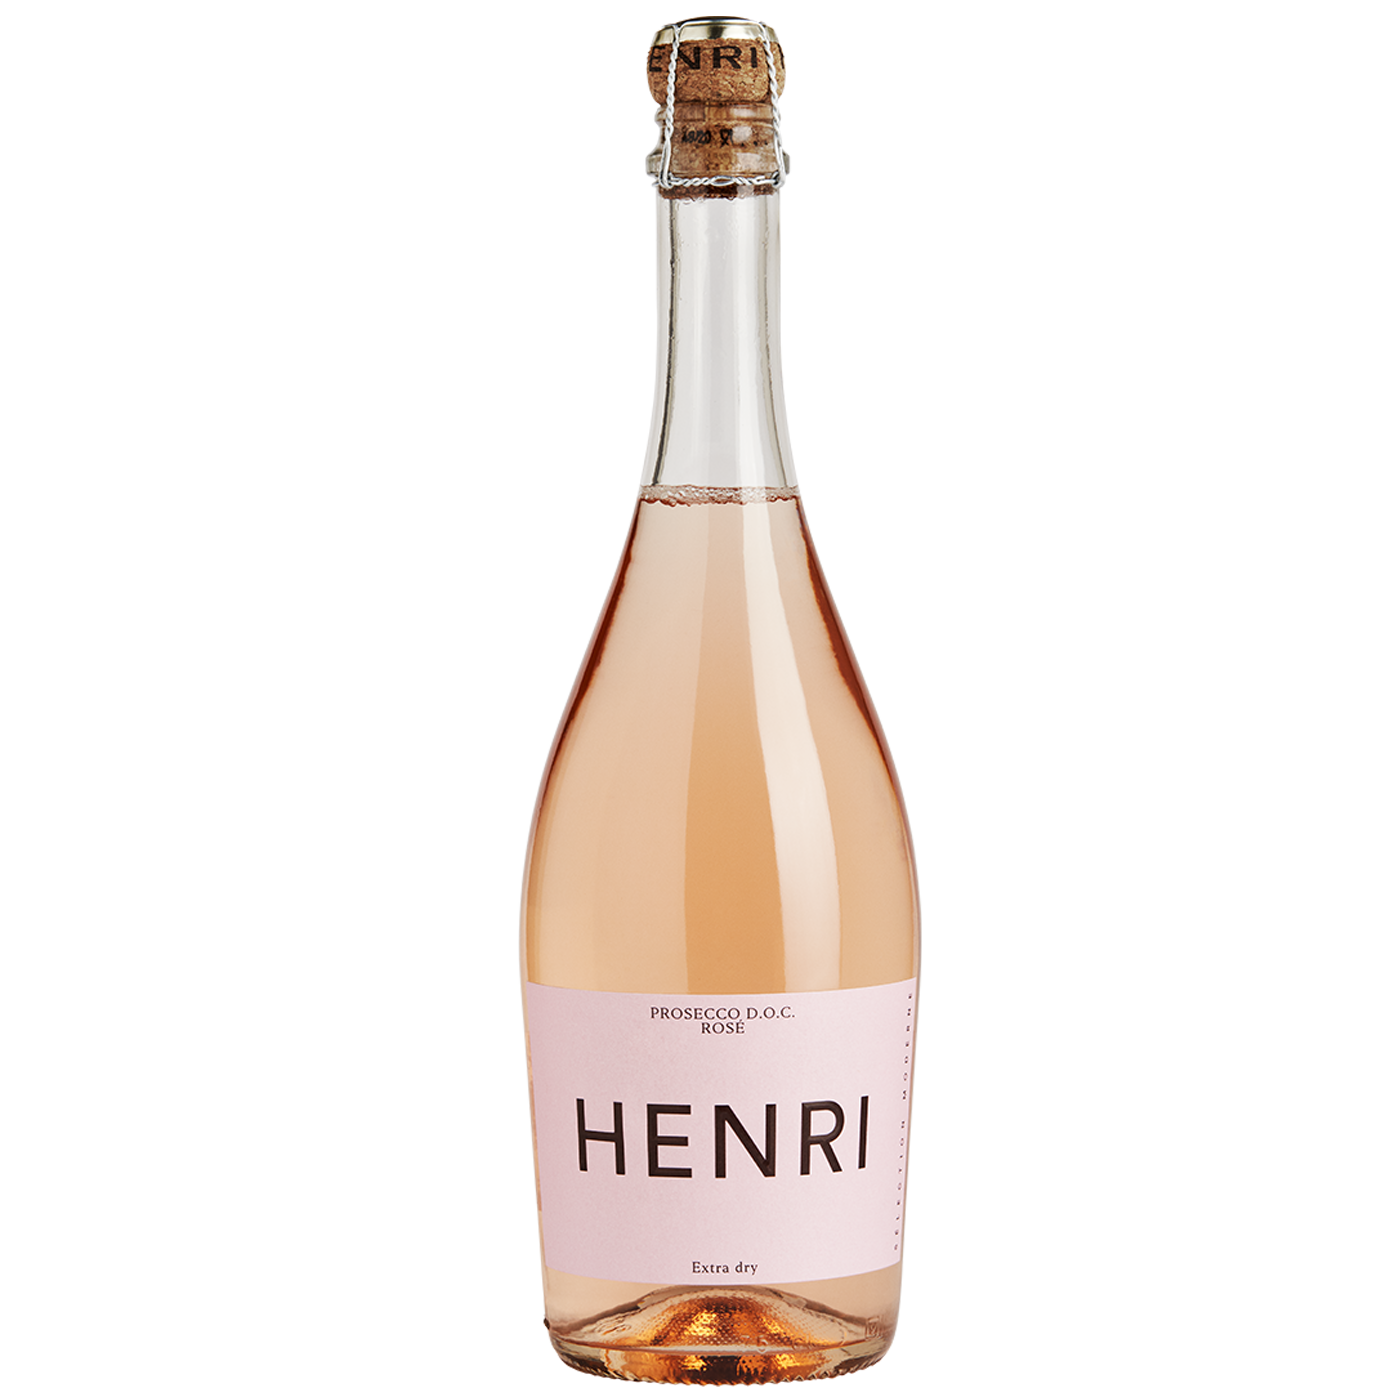 Henri Prosecco Rosé Extra dry